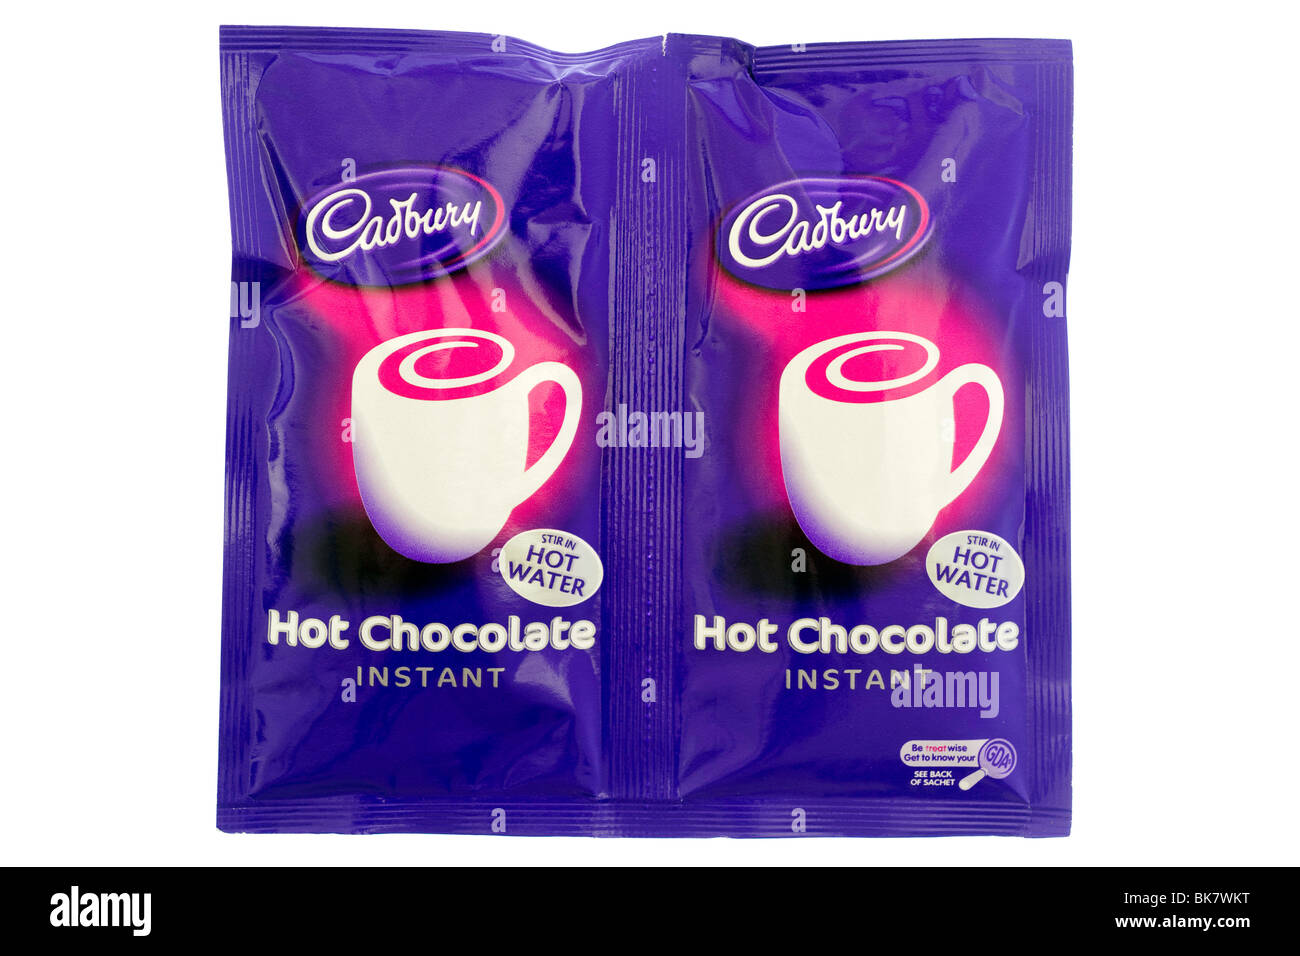 Deux sachets de boisson chocolat chaud instantané Cadbury Banque D'Images